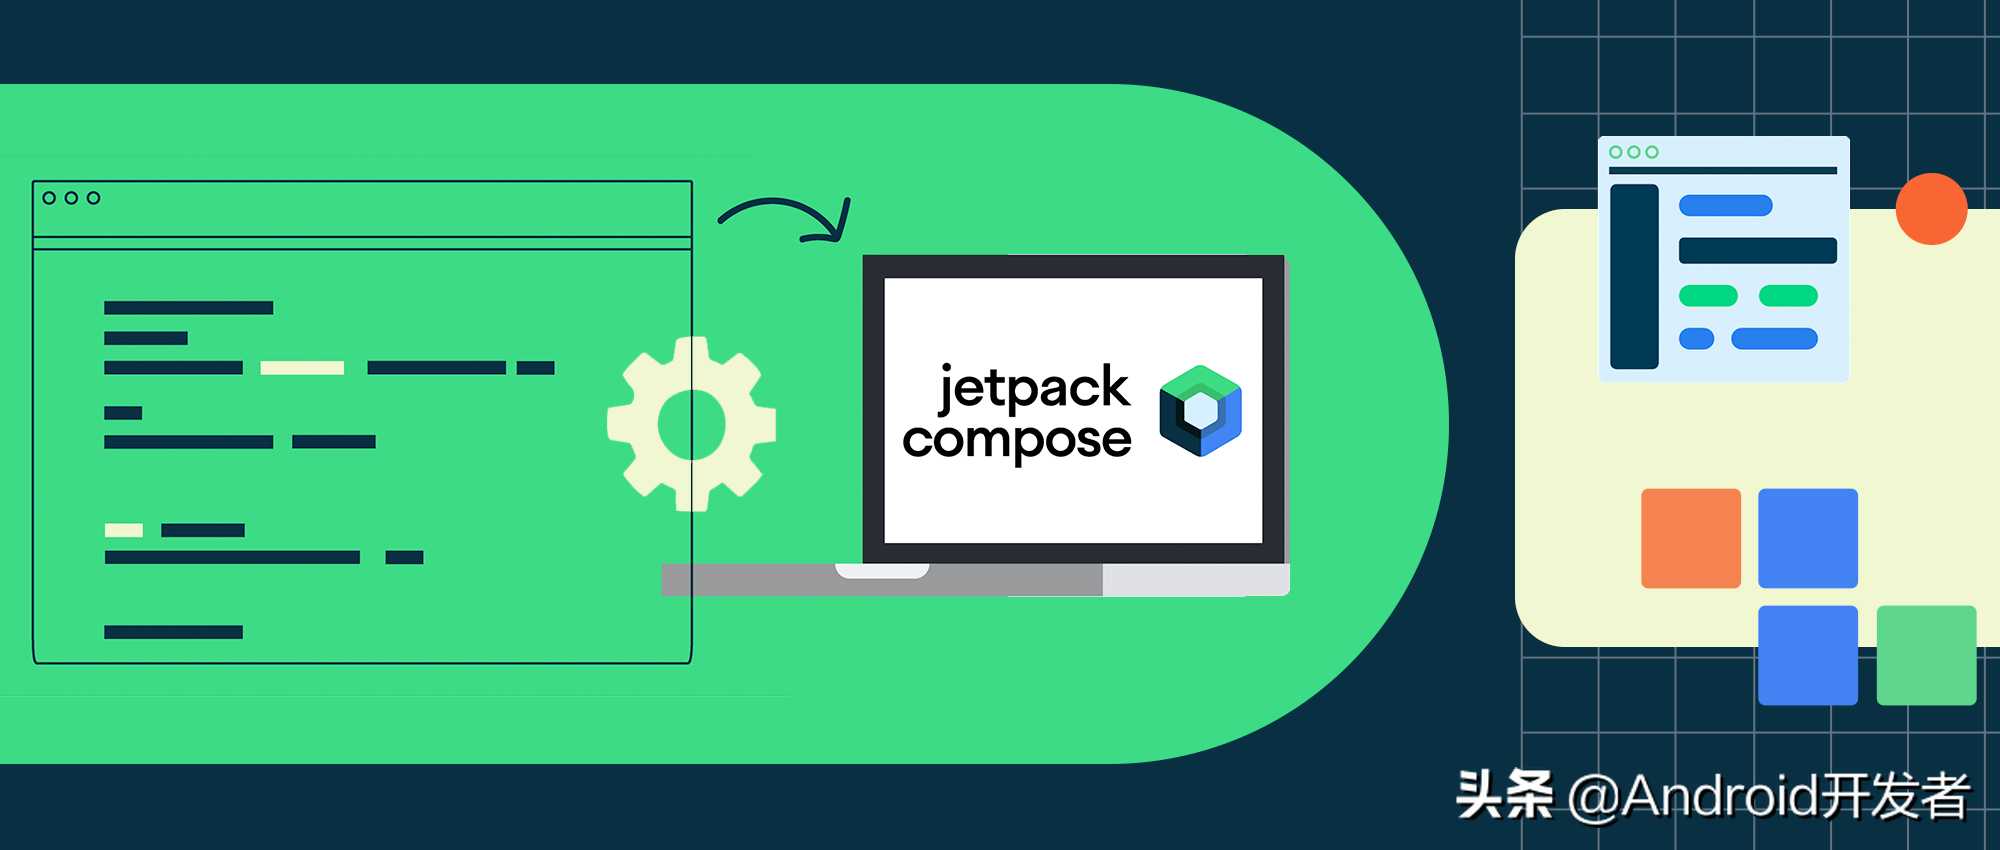 jetpack compose:从上手到进阶再到高手_从页面布局的解析方式来考察